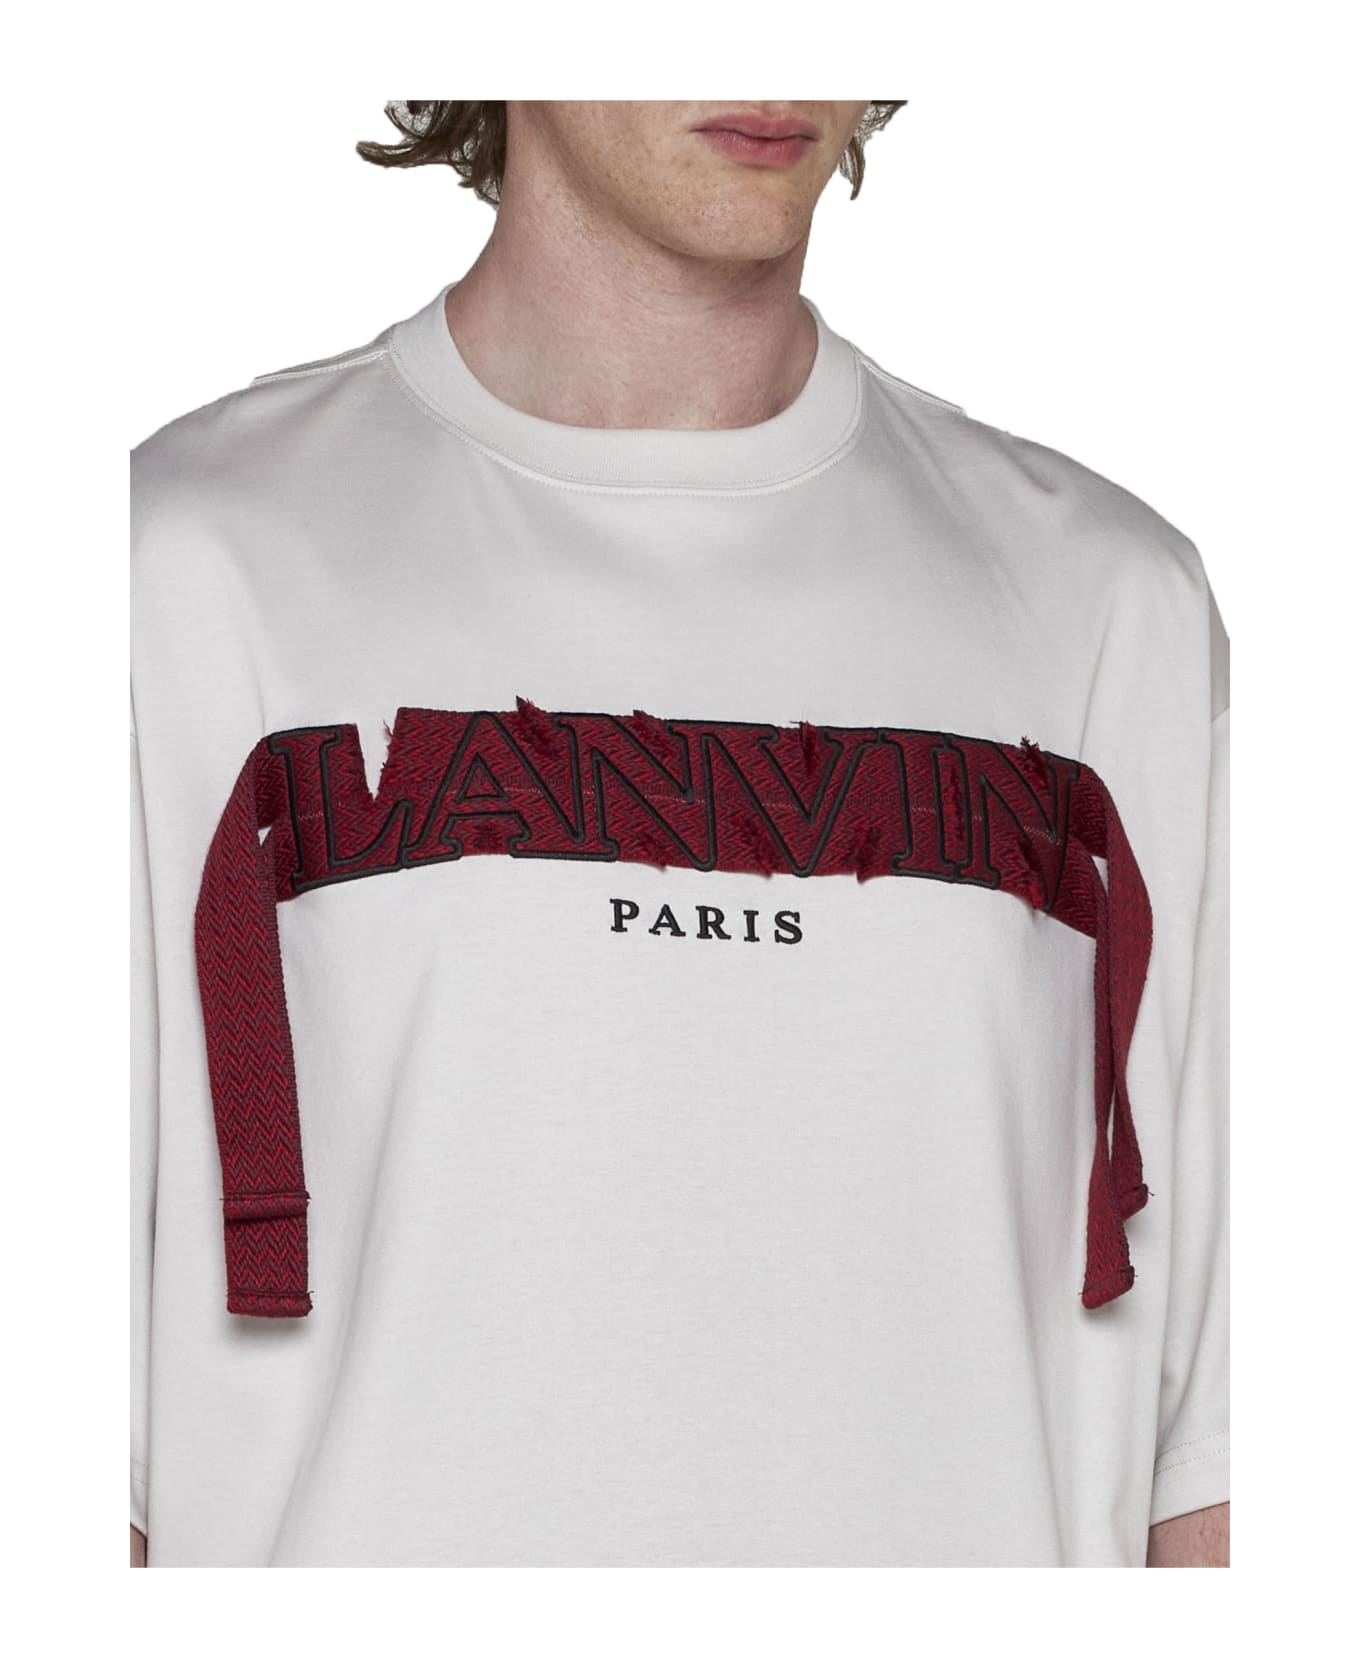 Lanvin T-Shirt - Mastic